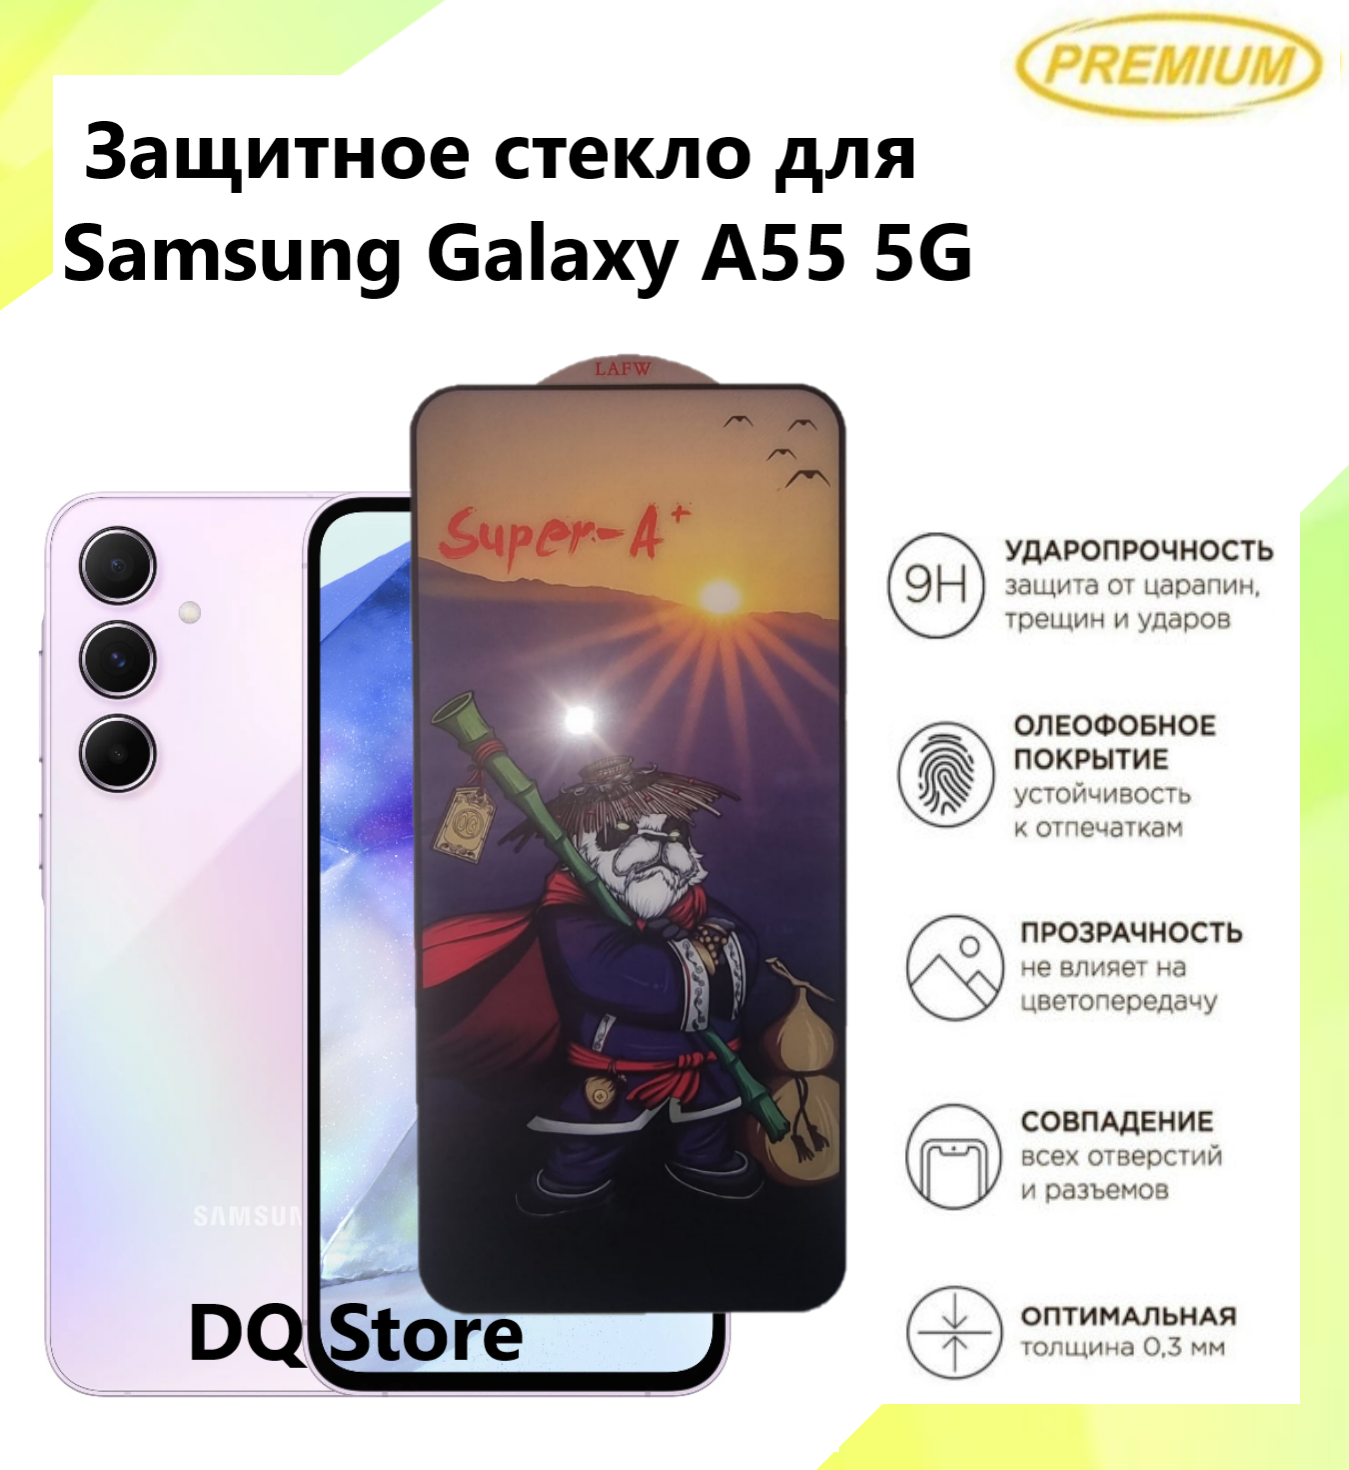 Защитное стекло для Samsung Galaxy A55 5G / Самсунг Галакси А55 . Полноэкранное защитное стекло с олеофобным покрытием Premium